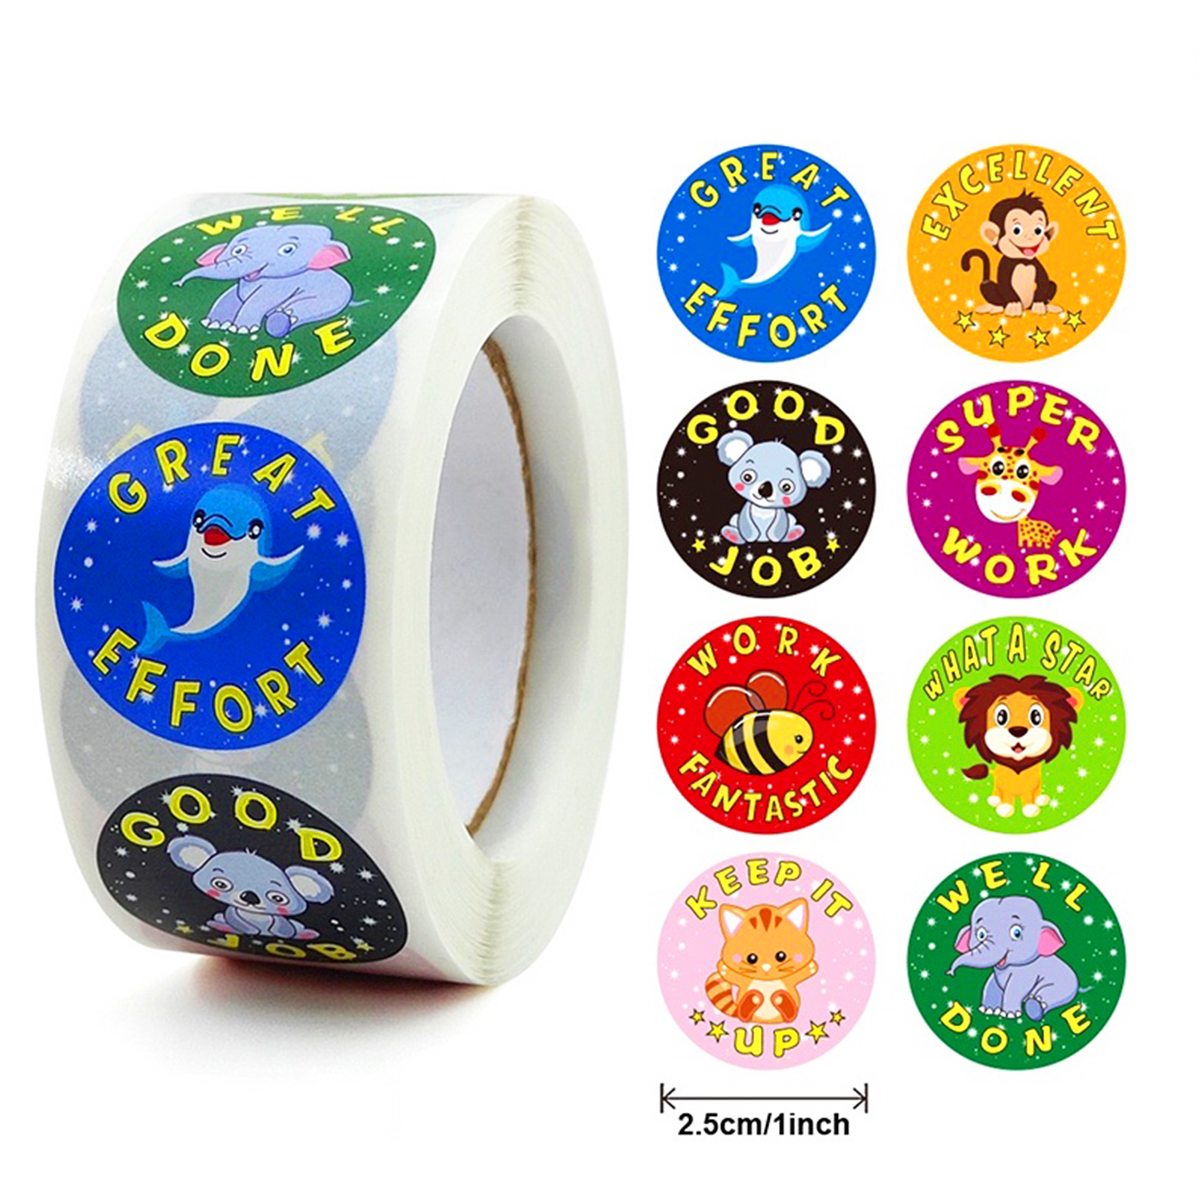 Cuộn 500 sticker nhãn dán khích lệ khen thưởng học tập cho bé yêu với nhiều họa tiết kèm slogan khiến những giờ học thêm sinh động – ST010